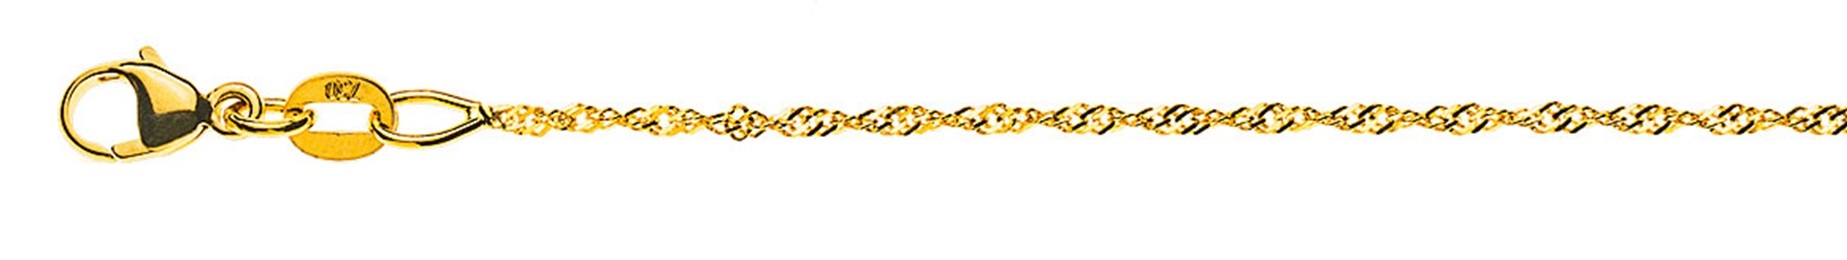 AURONOS Prestige Necklace Yellow Gold 18K Singapore Chain 40cm 1.2mm